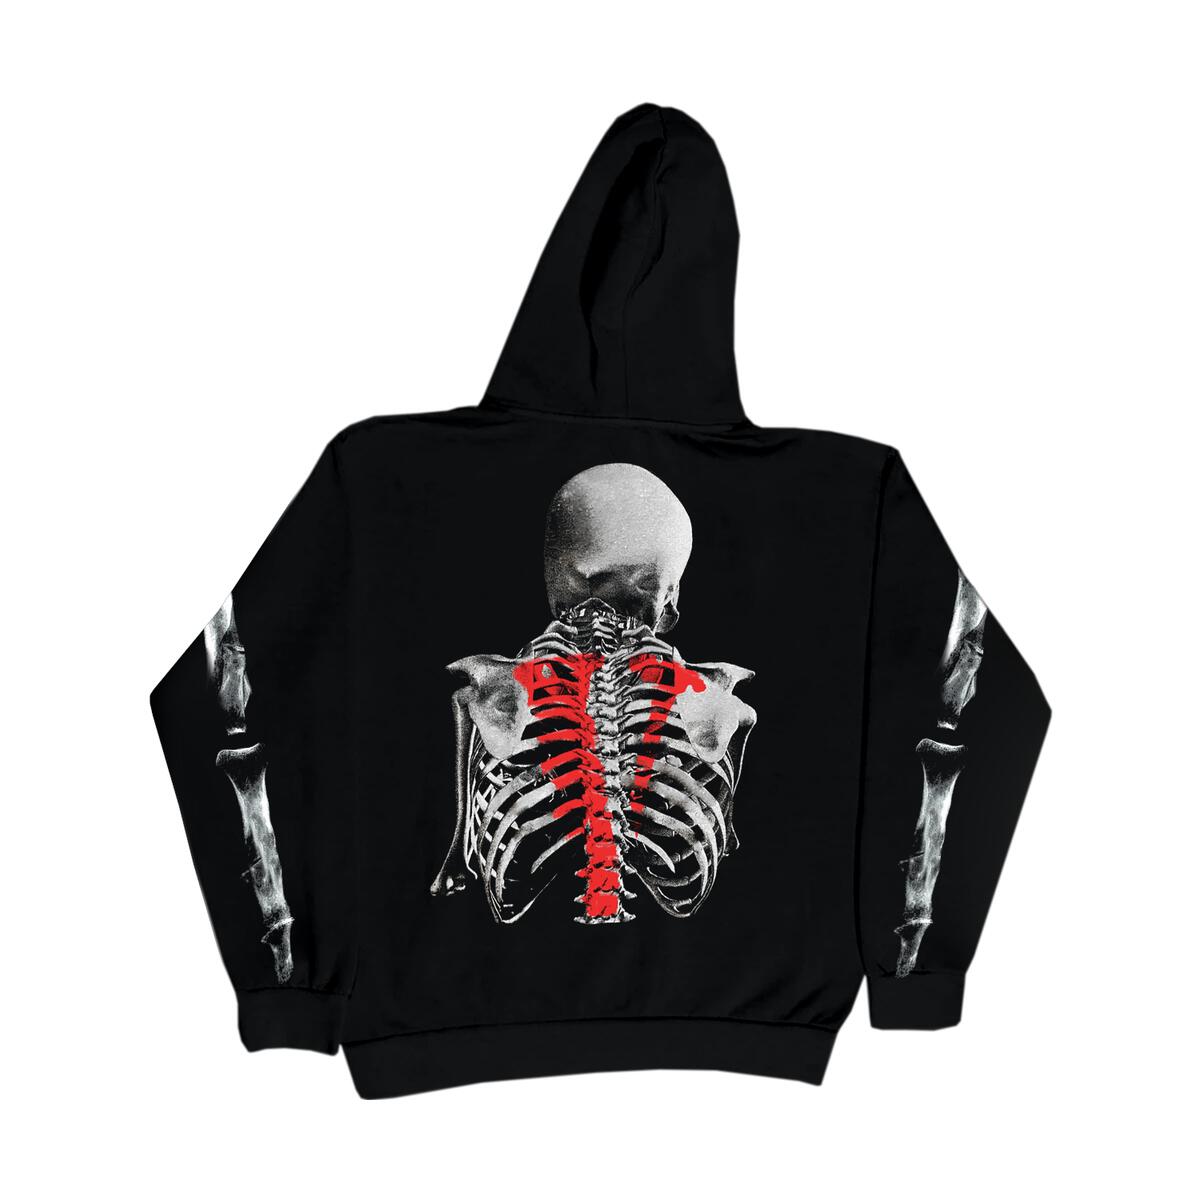 back of graphic Vlone skull and bones black hoodie 